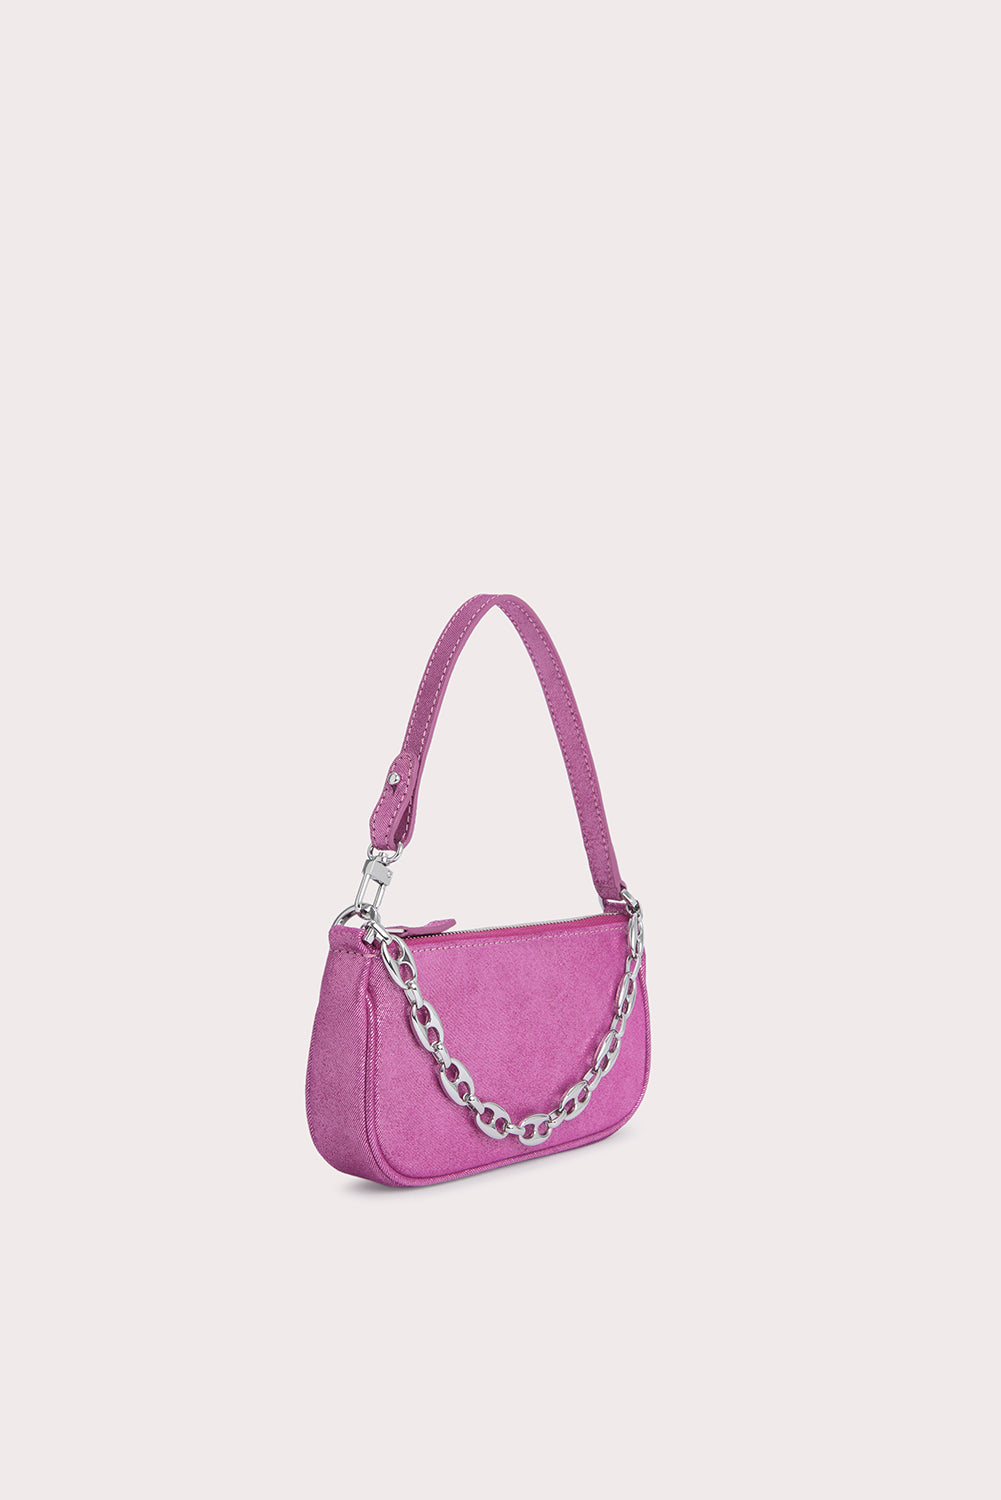 By FAR Rachel Leather Shoulder Bag, Pink